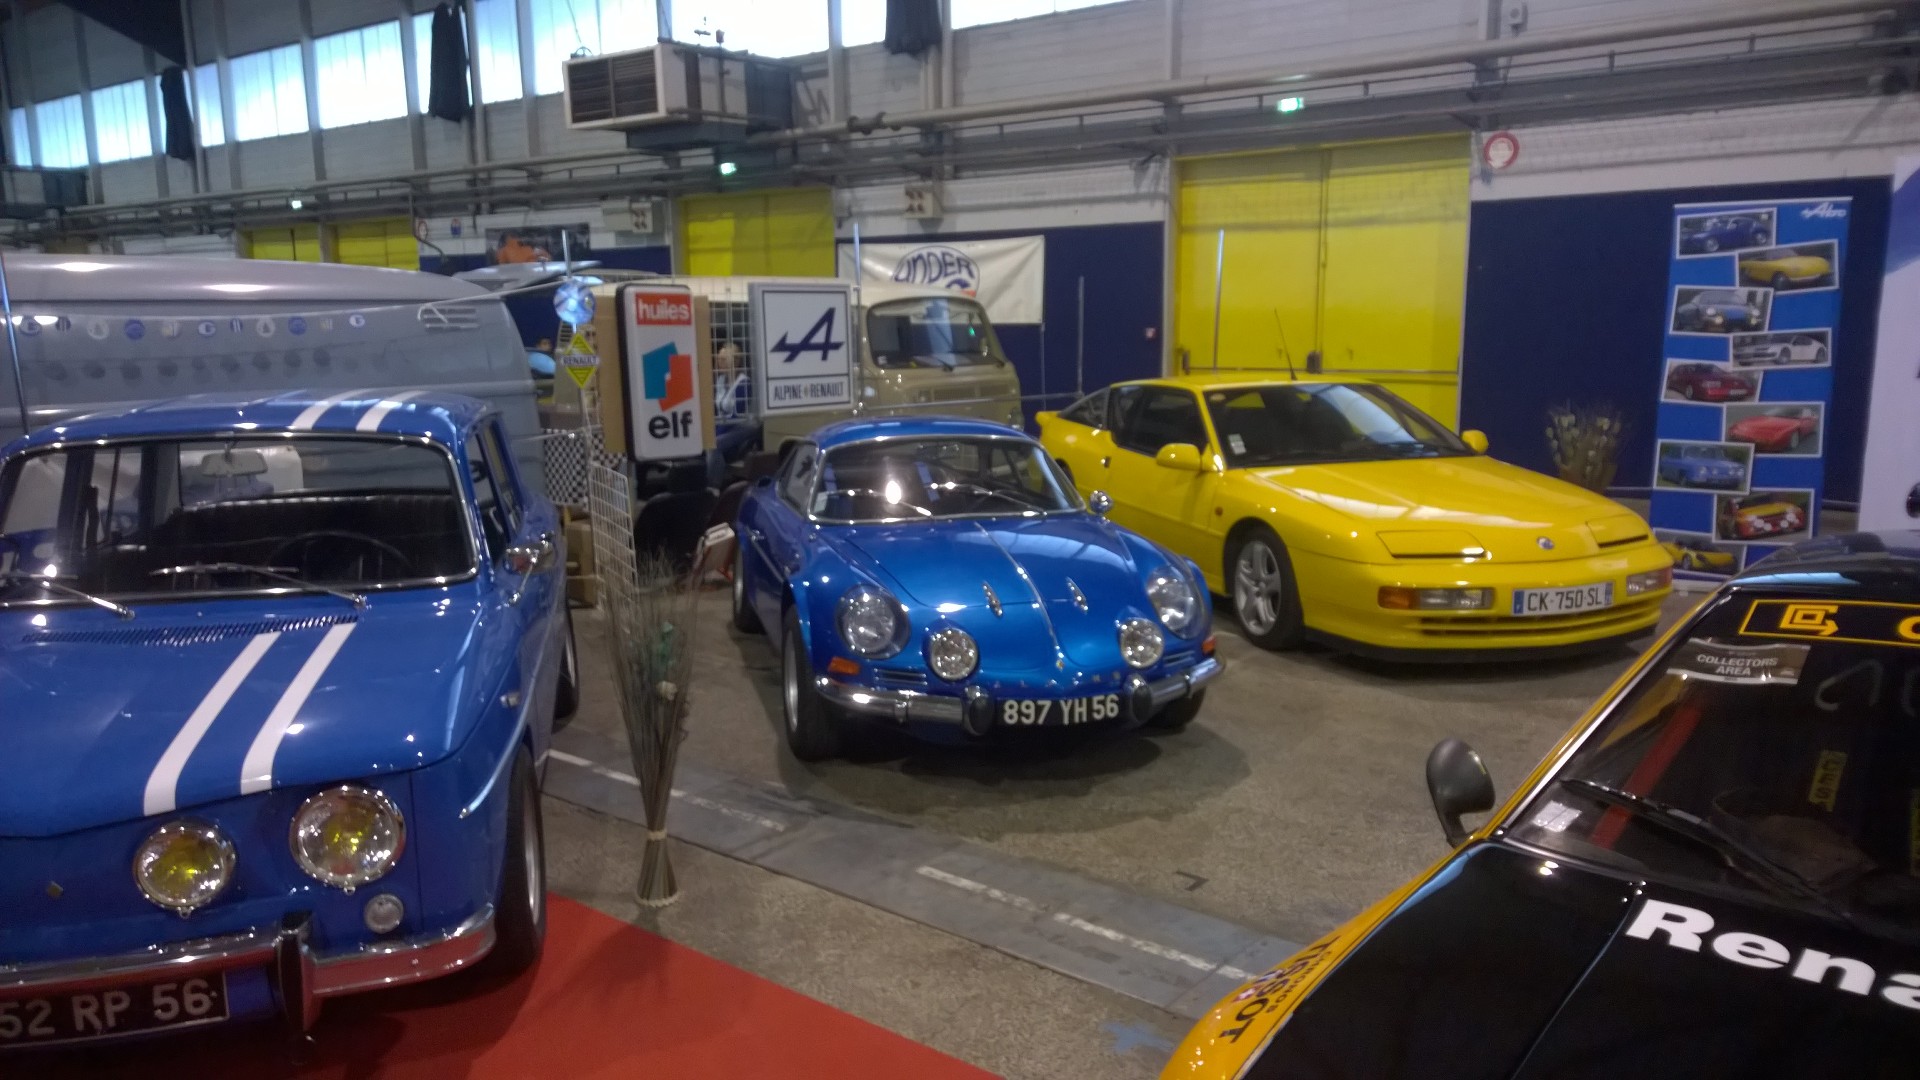 DM - photo - R8 Gordini - Alpine A110 - Ouest Motors Festival 2015